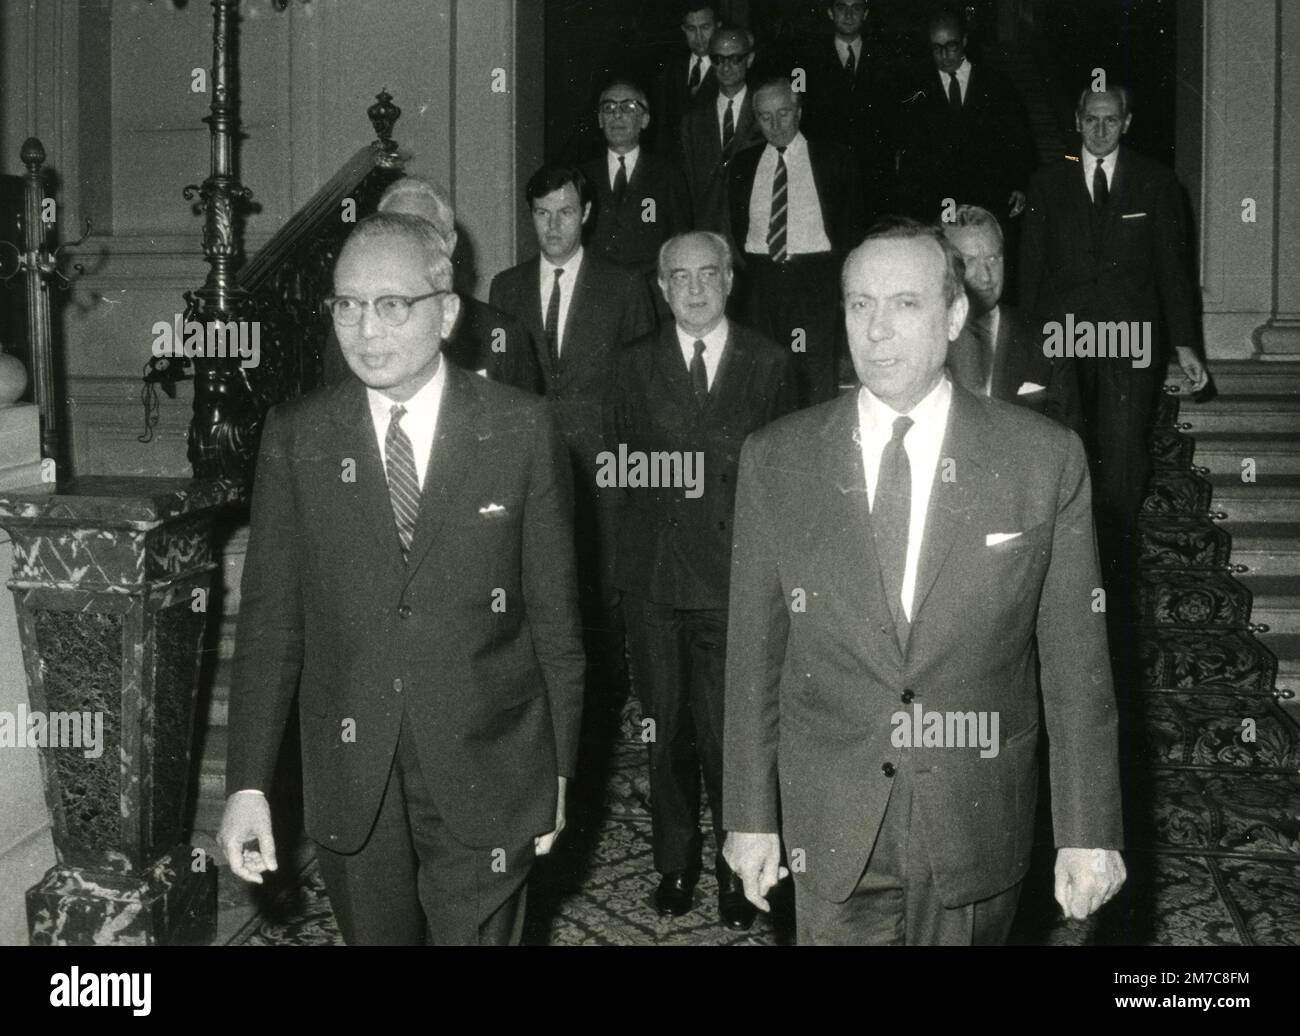 El político y primer ministro francés Michel Debré (derecha) y el secretario general de las Naciones Unidas U Thant, Francia 1968 Foto de stock